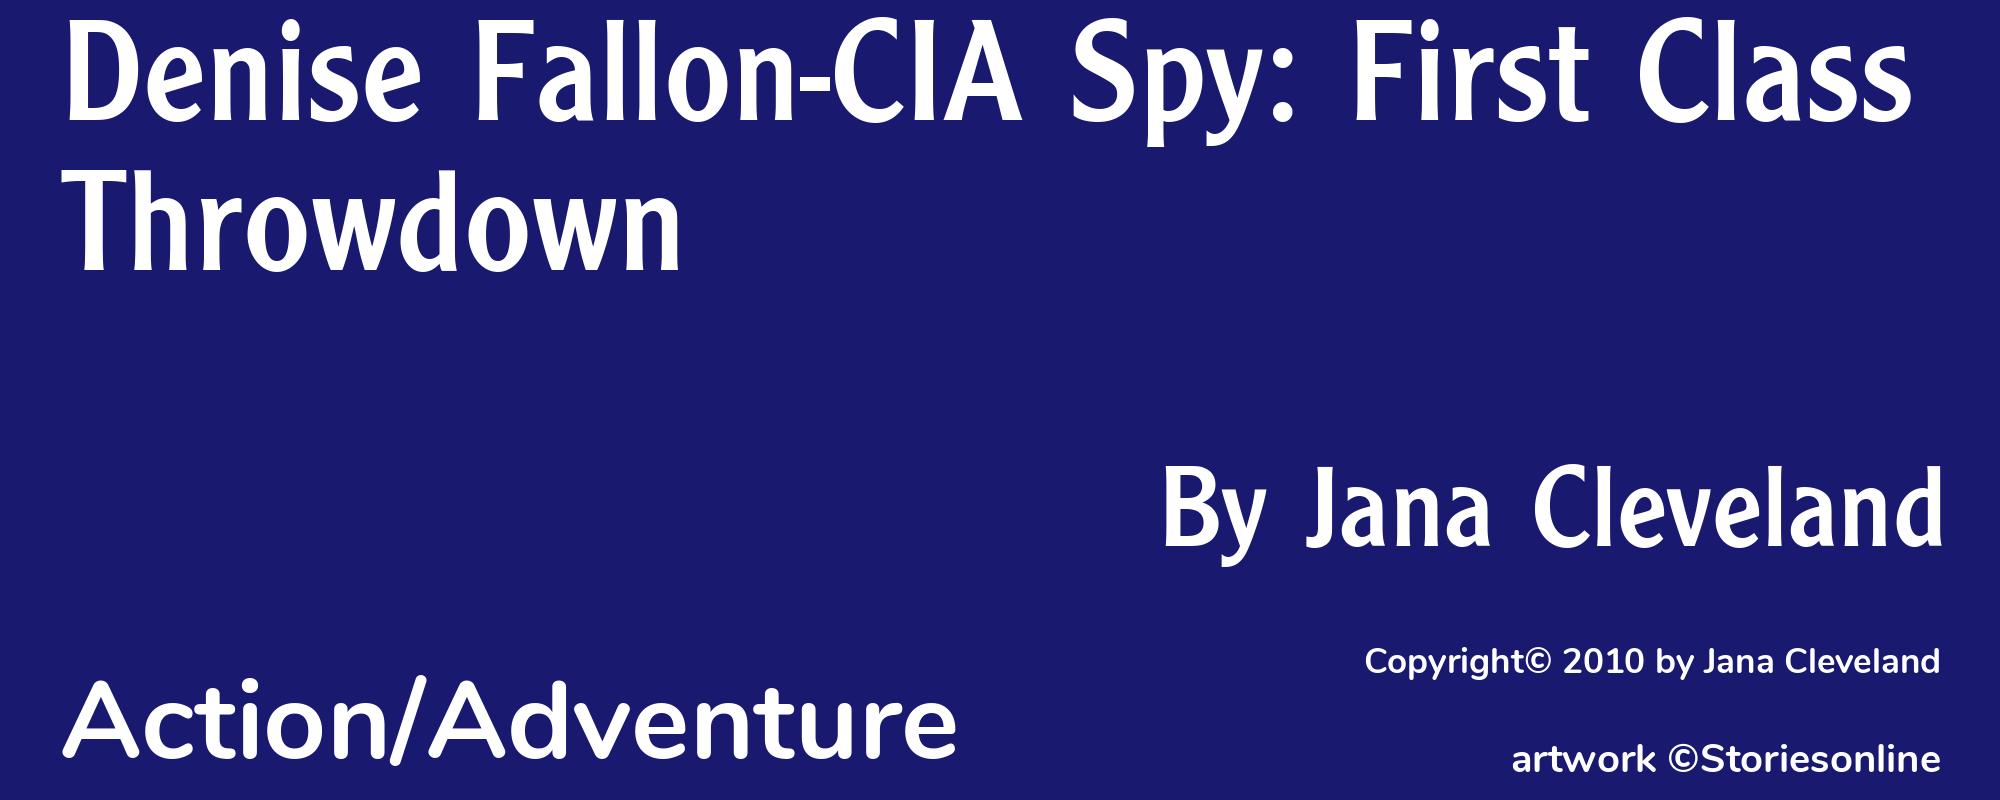 Denise Fallon-CIA Spy: First Class Throwdown - Cover